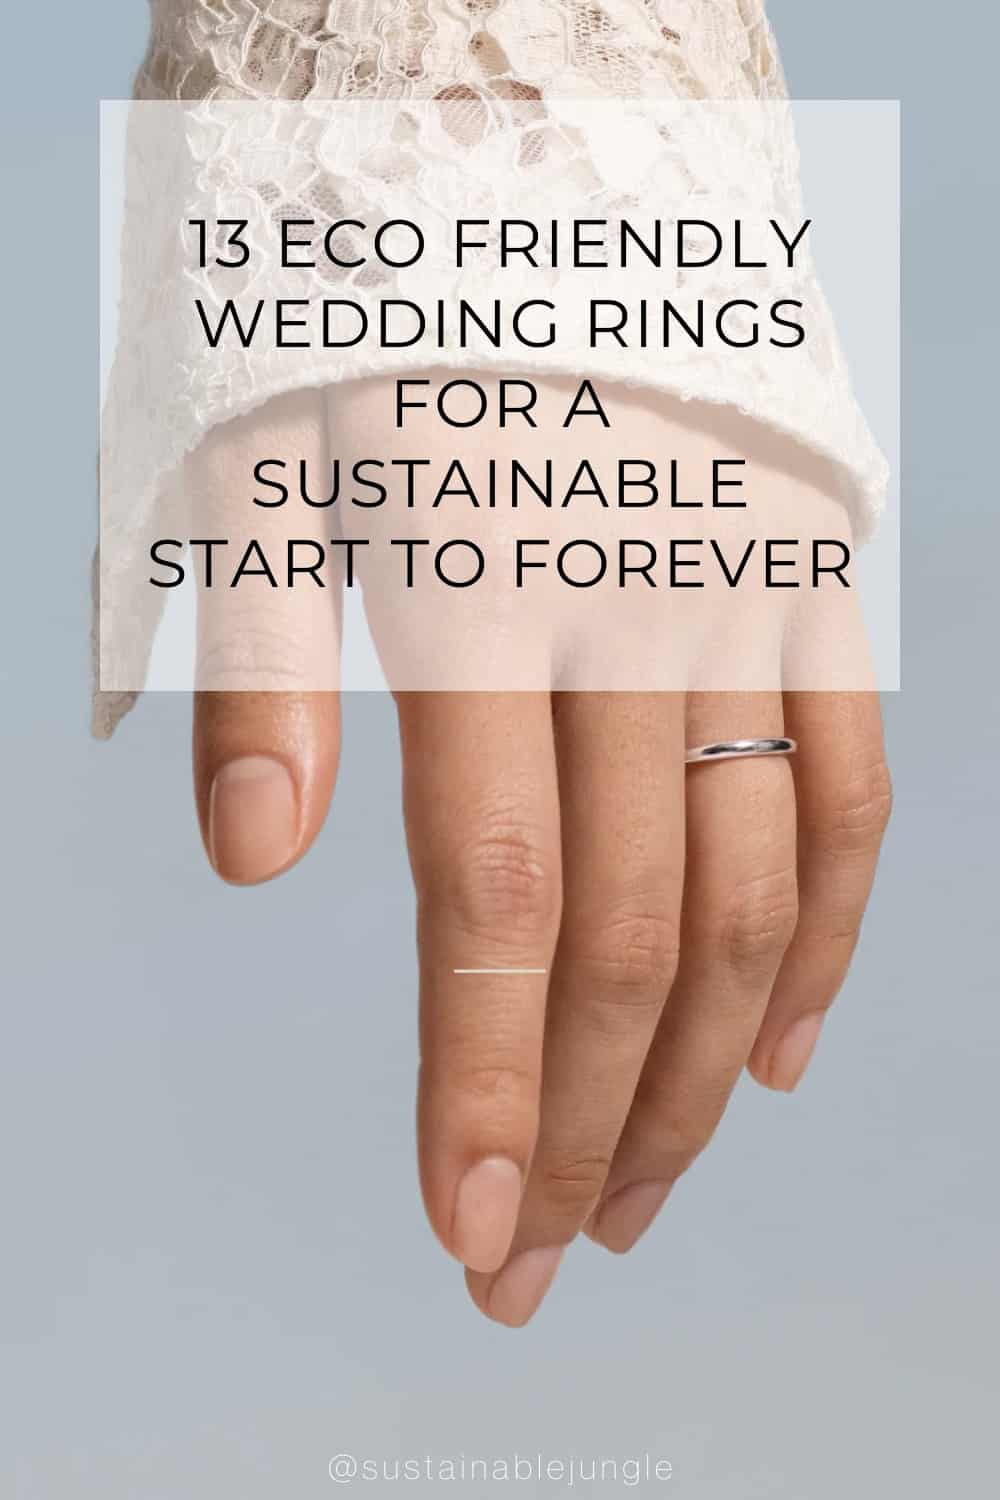 13枚生态友好的结婚戒指，从可持续的开始到永远#生态友好的婚礼#最佳生态友好的婚礼#生态友好的婚礼#可持续的婚礼#可回收的婚礼#道德的婚礼#环境友好的婚礼#可持续的丛林图片由奥斯卡·马辛拍摄